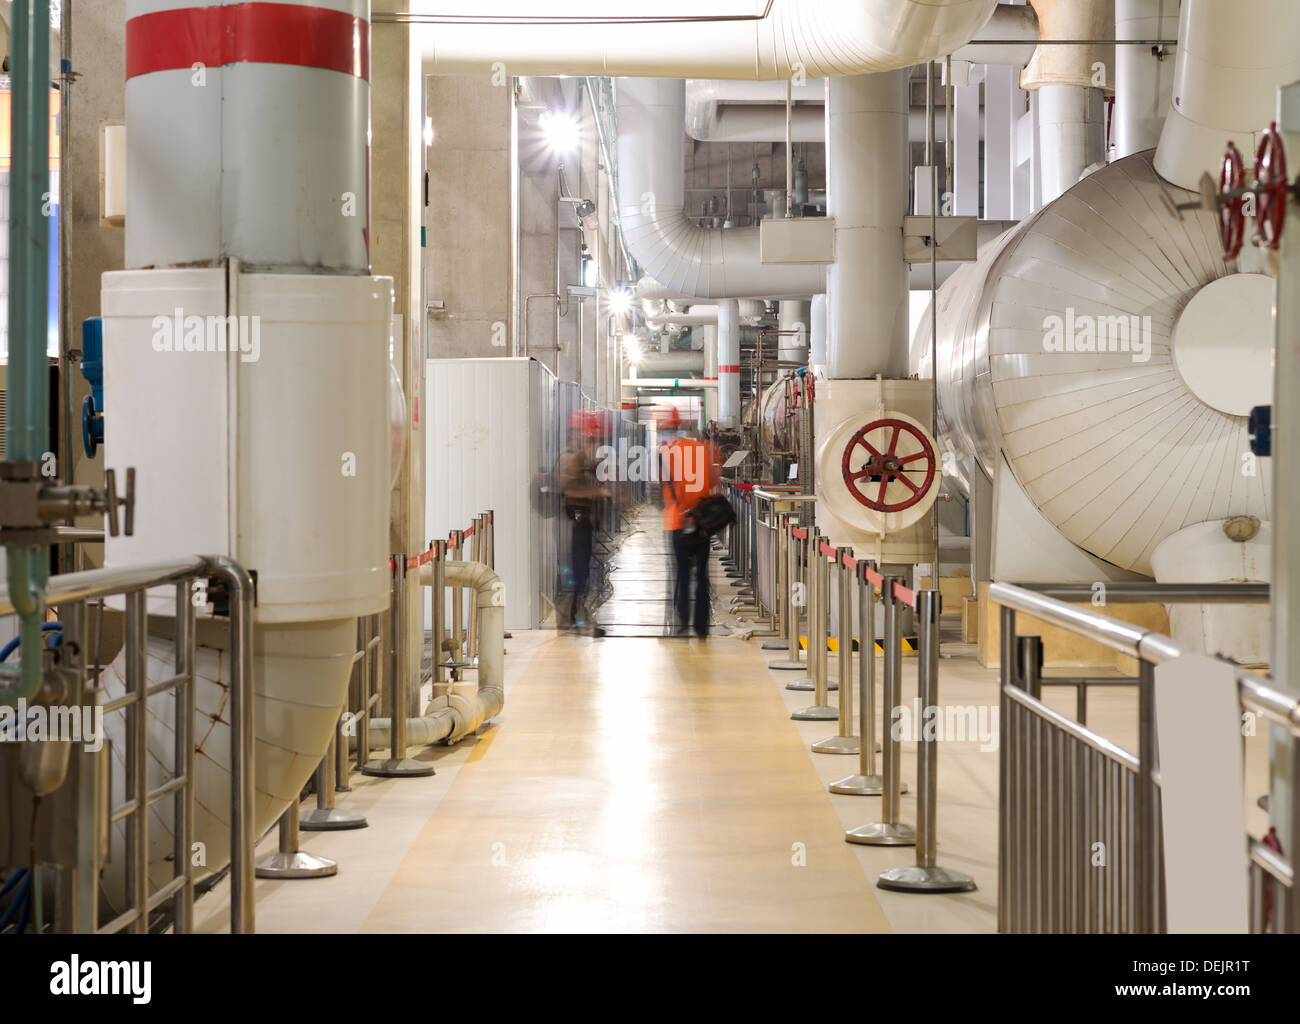 Le attrezzature, i cavi e le tubazioni come si trova all' interno di un industriale moderno impianto di alimentazione Foto Stock